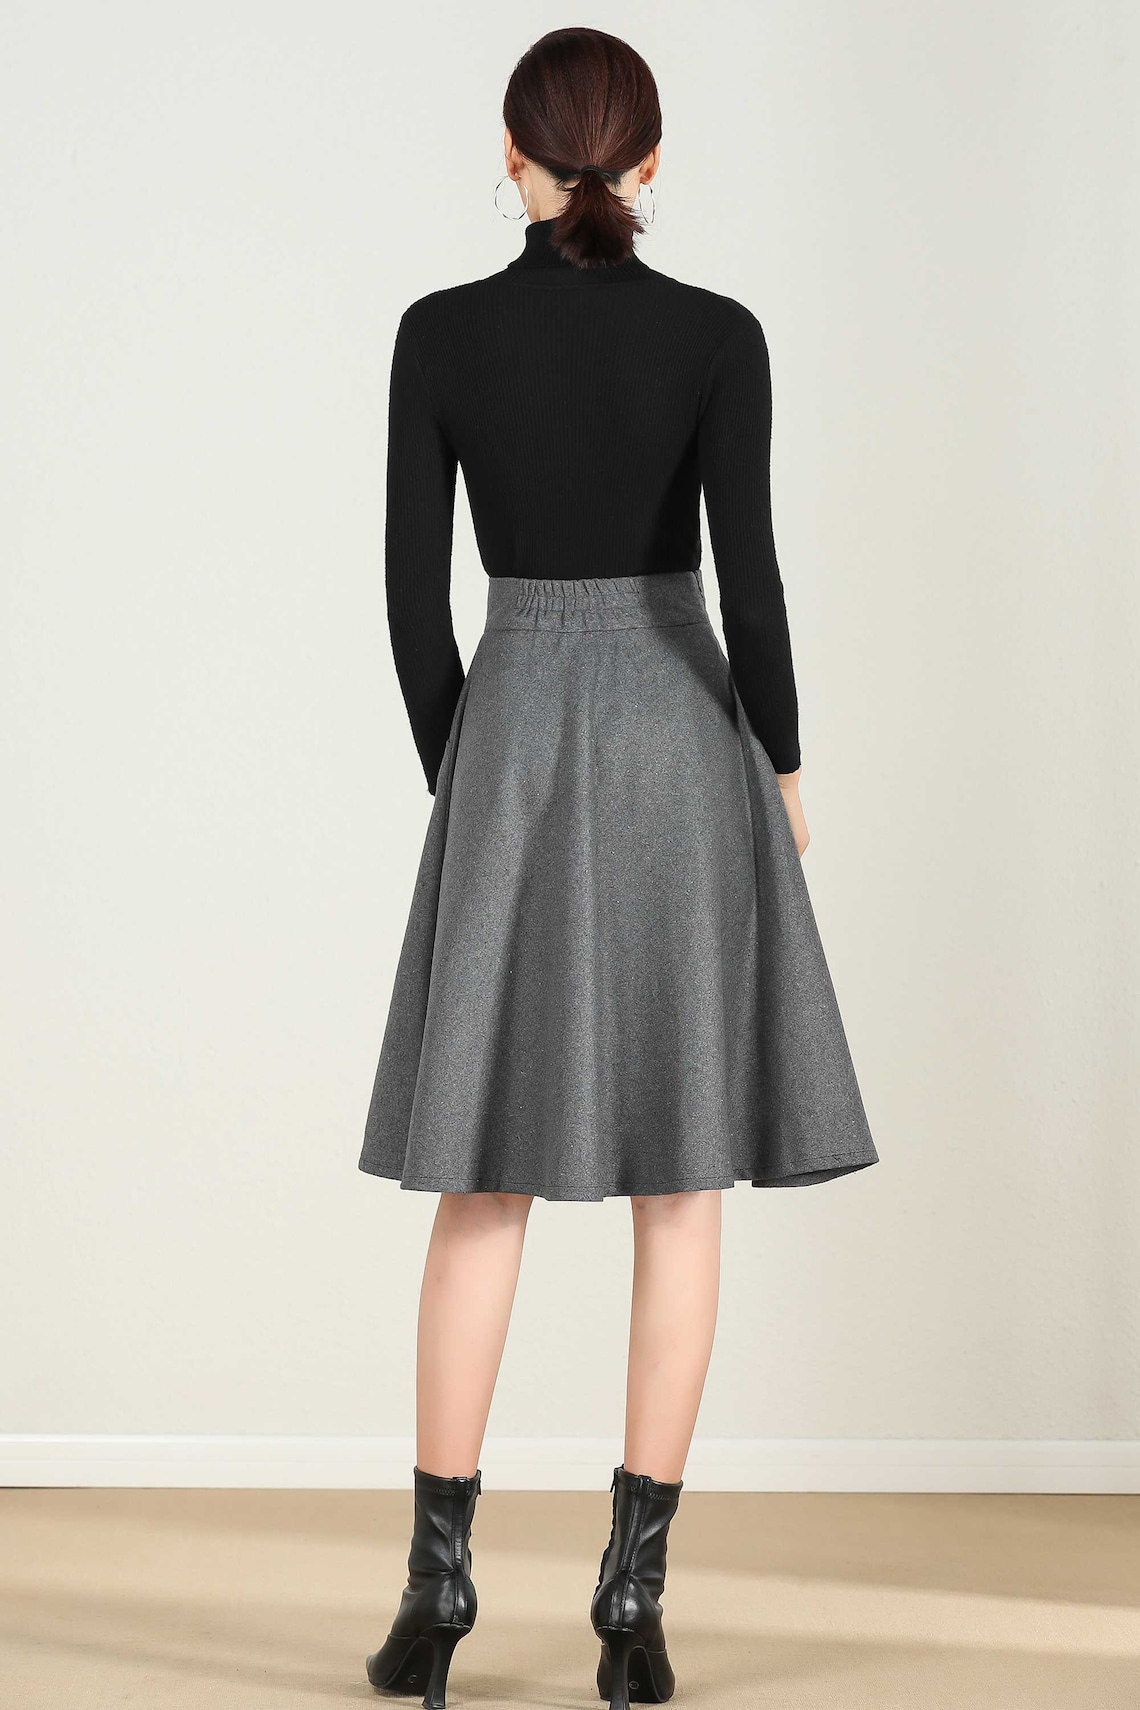 Short A Line Wool Skirt in Gray High Waist Skirt Midi Skirt | Etsy